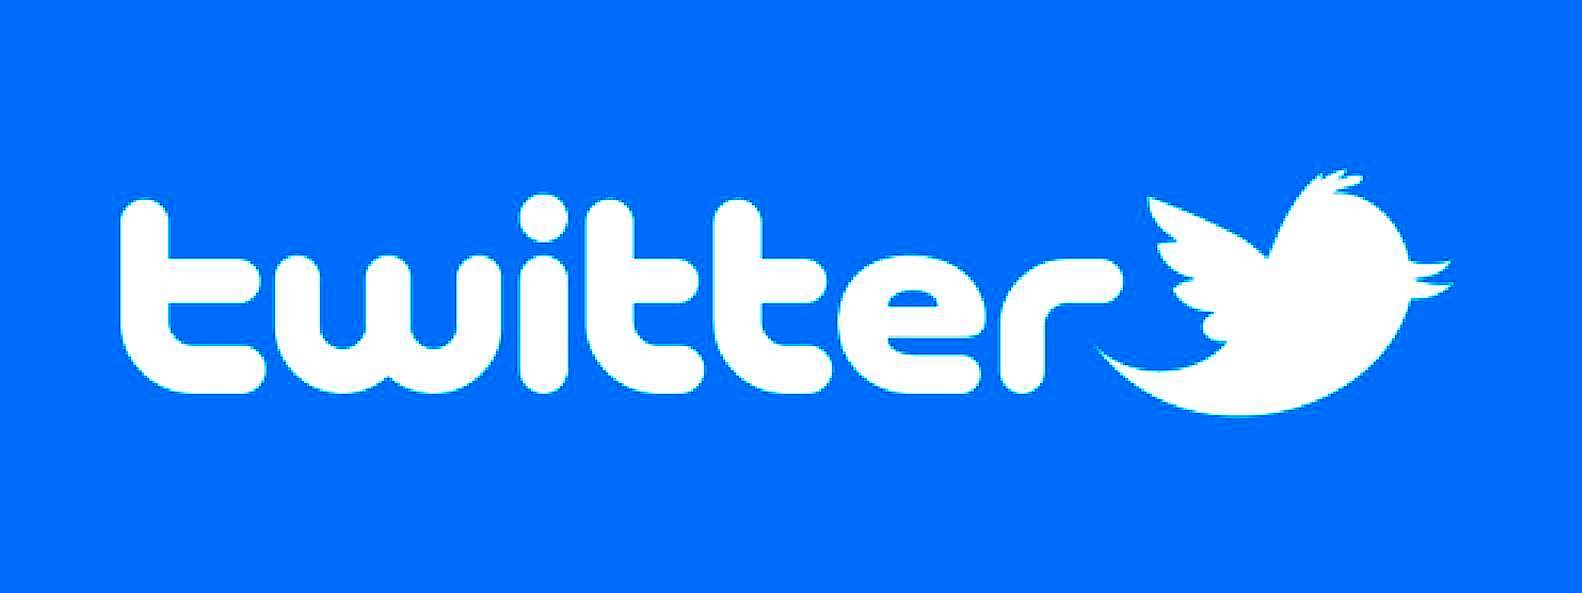 فیلتر توییتر برداشته می شود؟